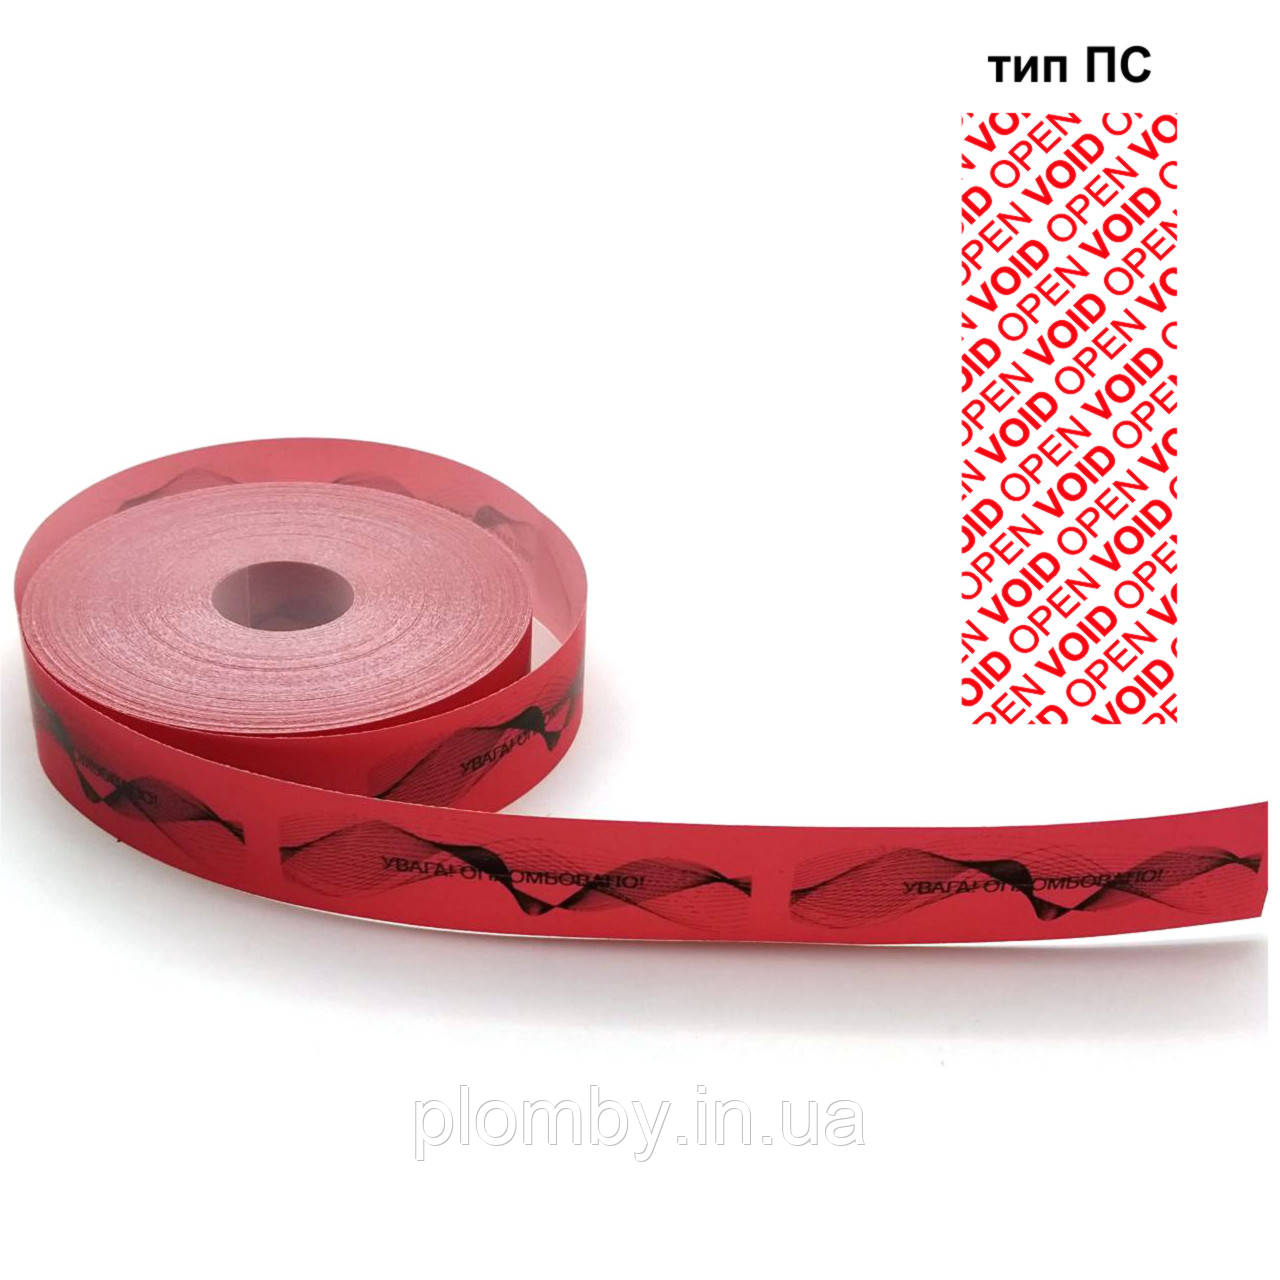 Індикаторна пломба-наклейка 30х100 мм, червона, залишає слід на об'єкті, 500 шт. у рулоні.